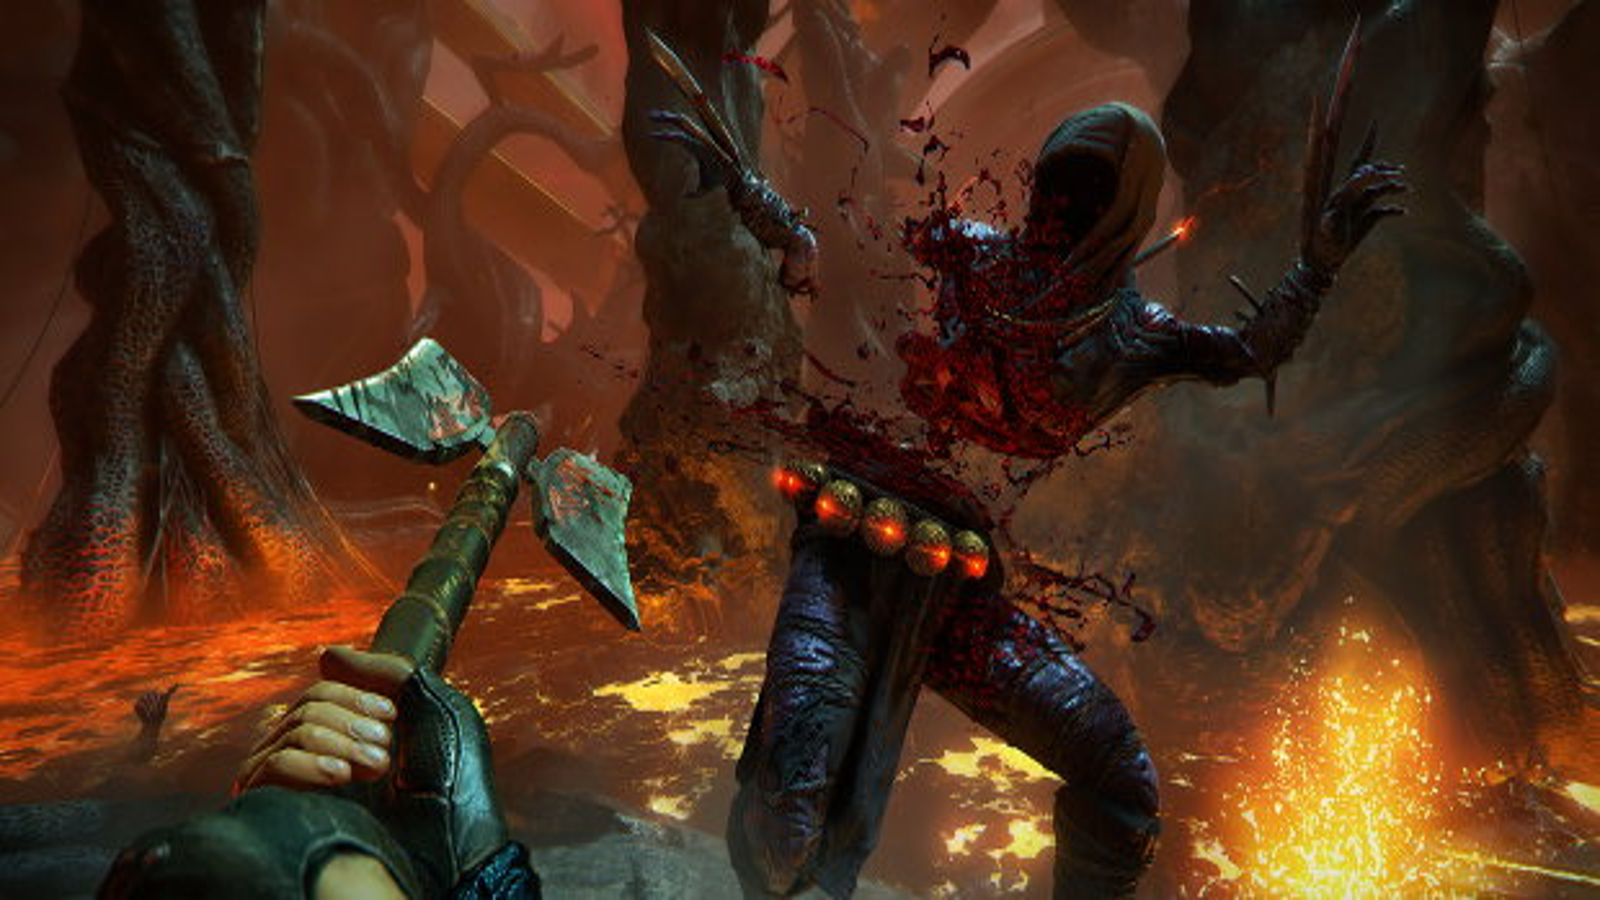 Shadow Warrior 2 Brings More Wang to PS4 This Week